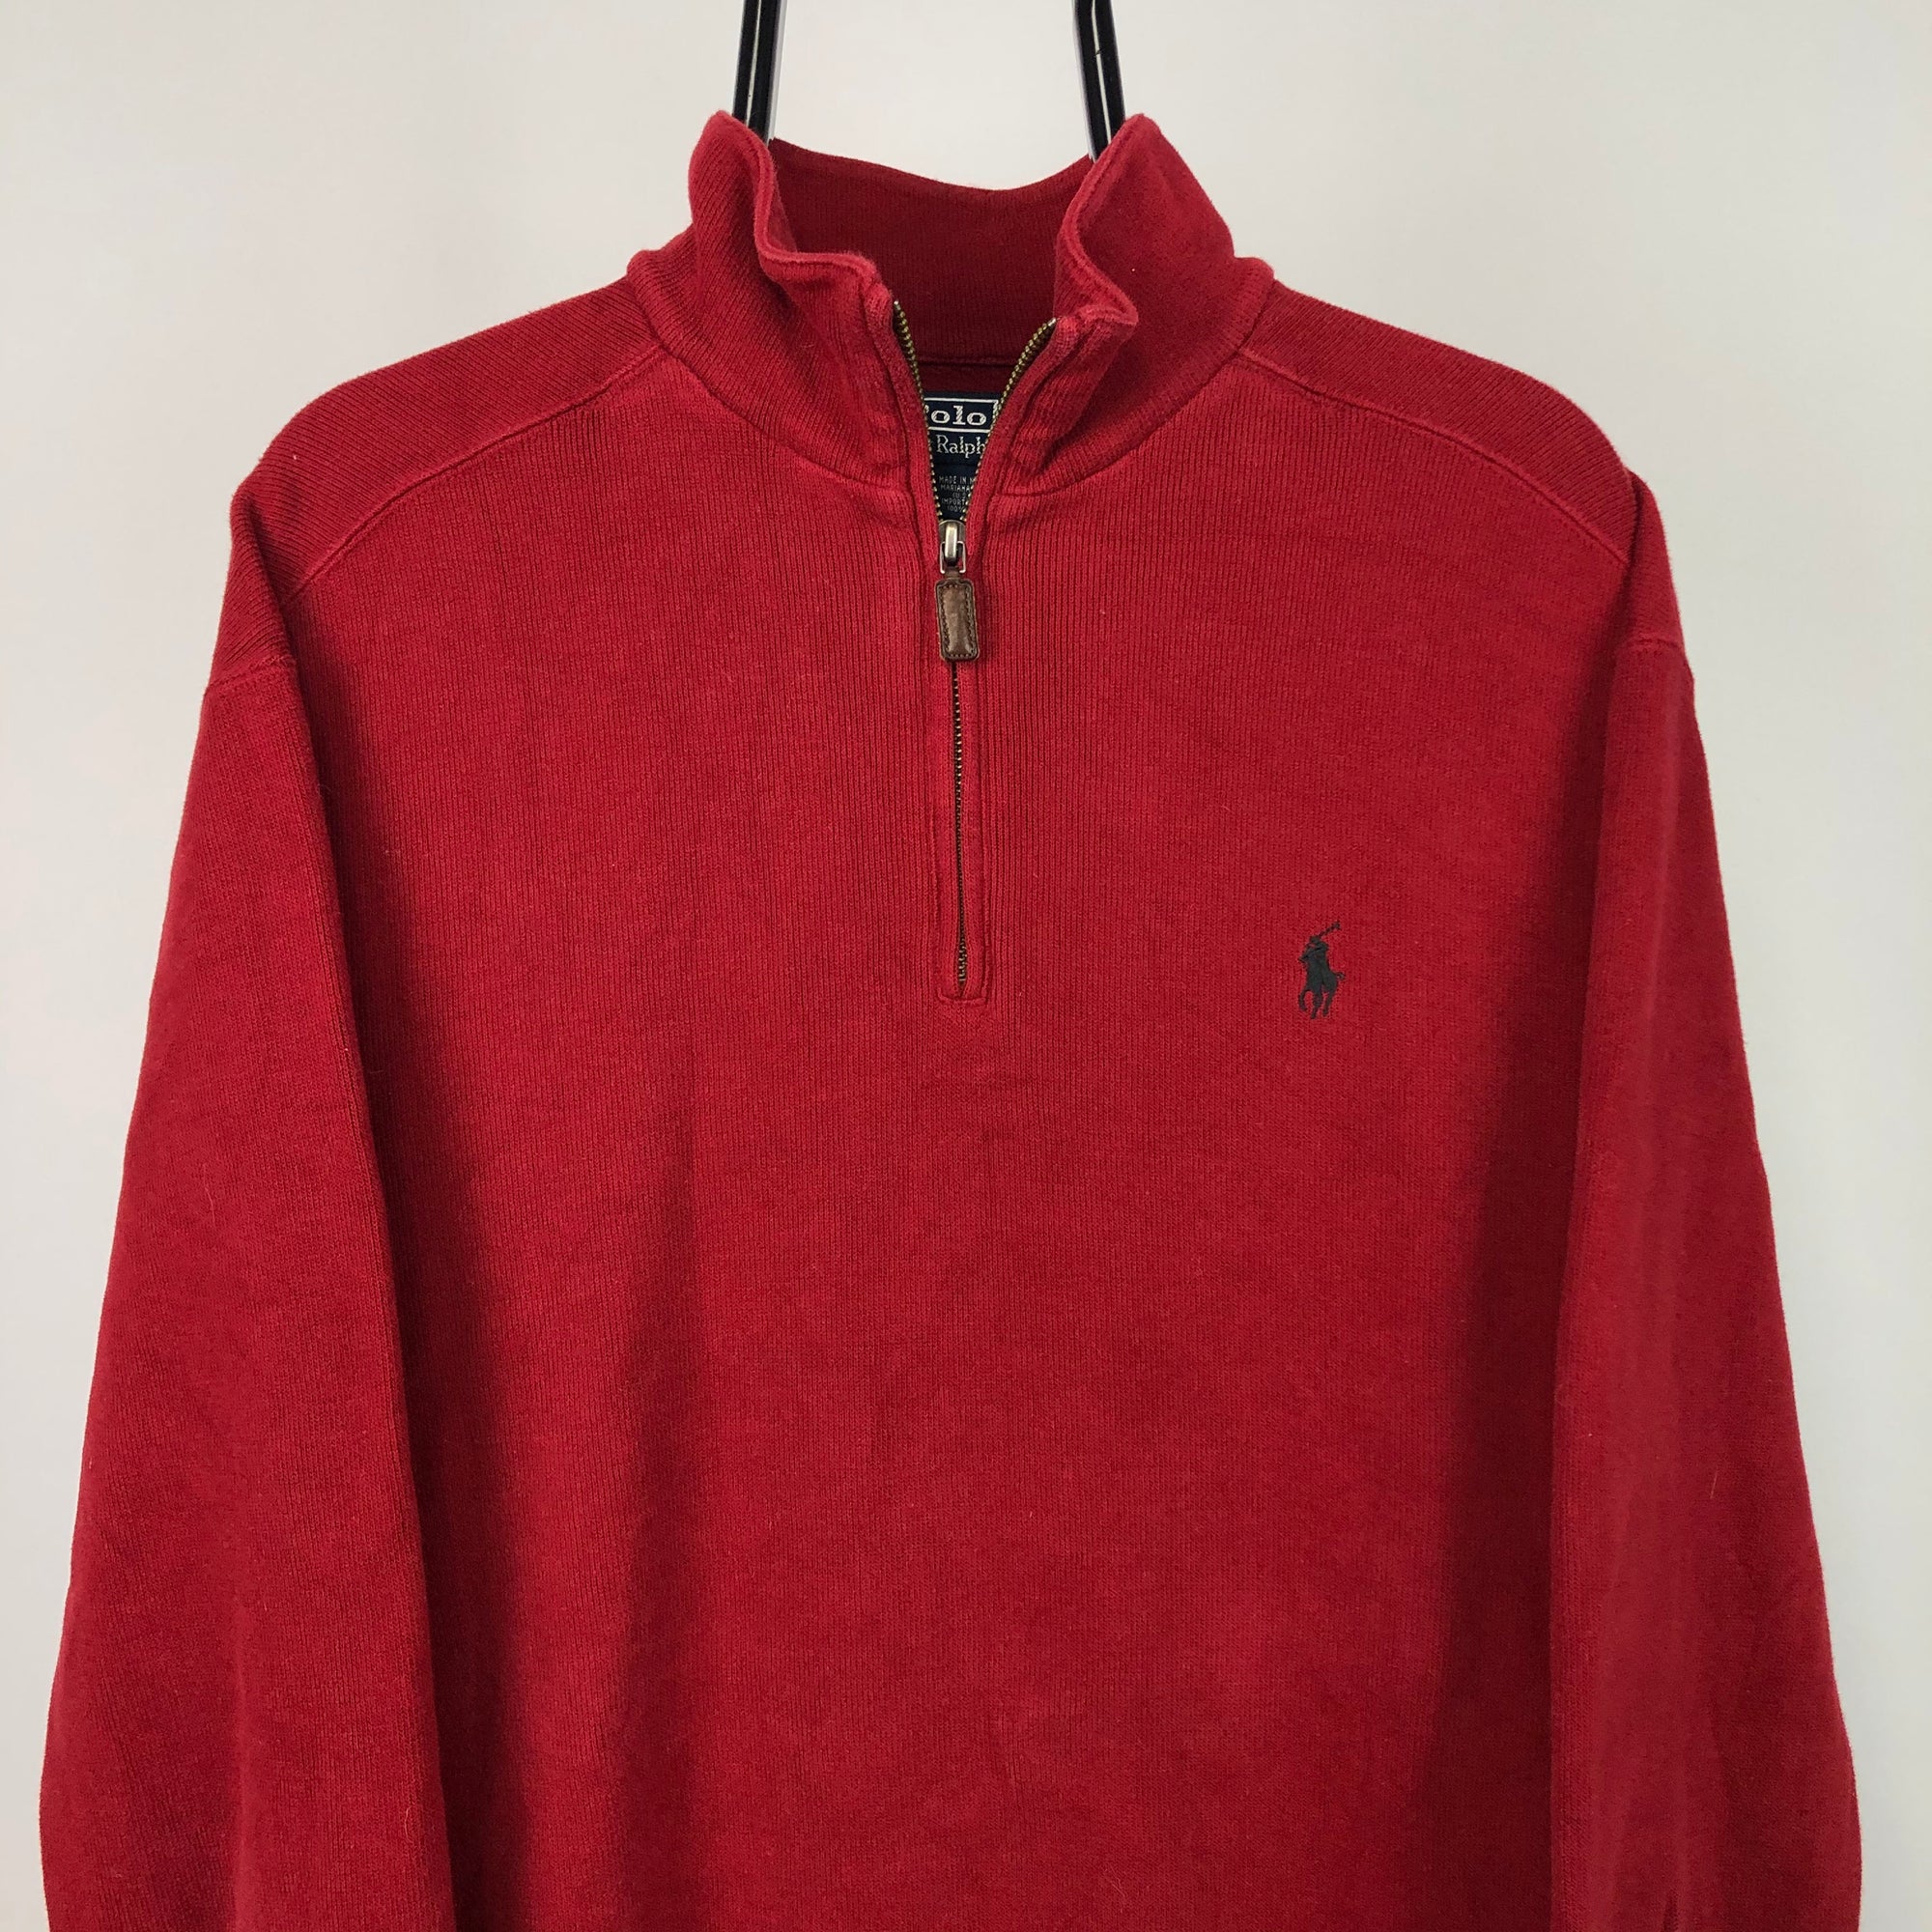 Polo Ralph Lauren 1/4 Zip Sweatshirt in Red - Men's Large/Women's XL